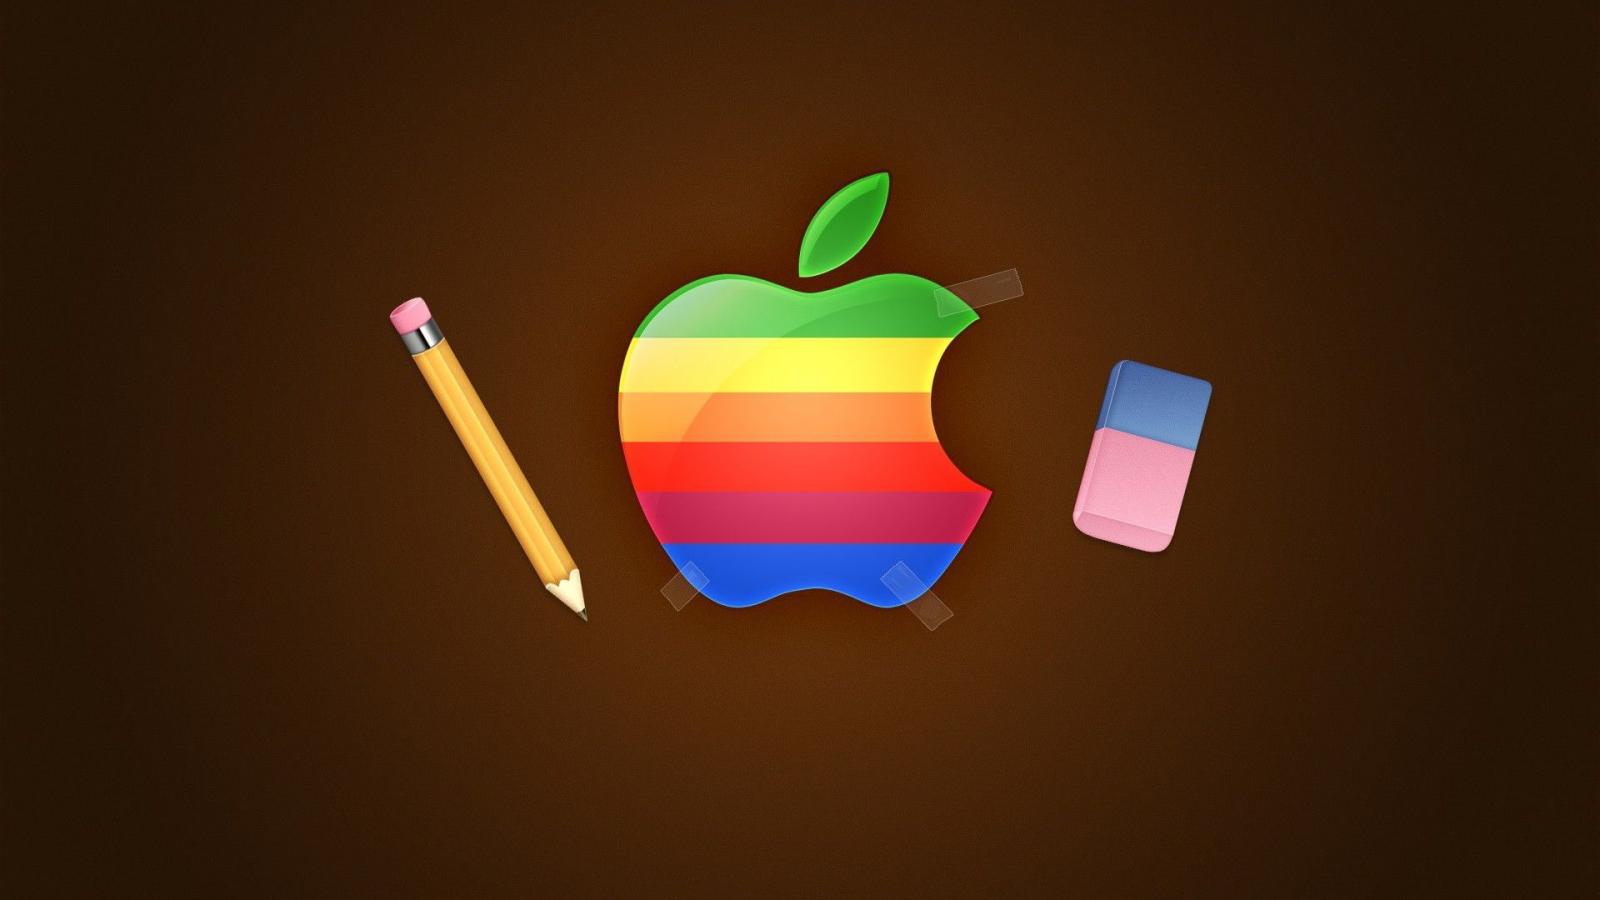 Надкушенное яблоко, или история логотипов компании Apple